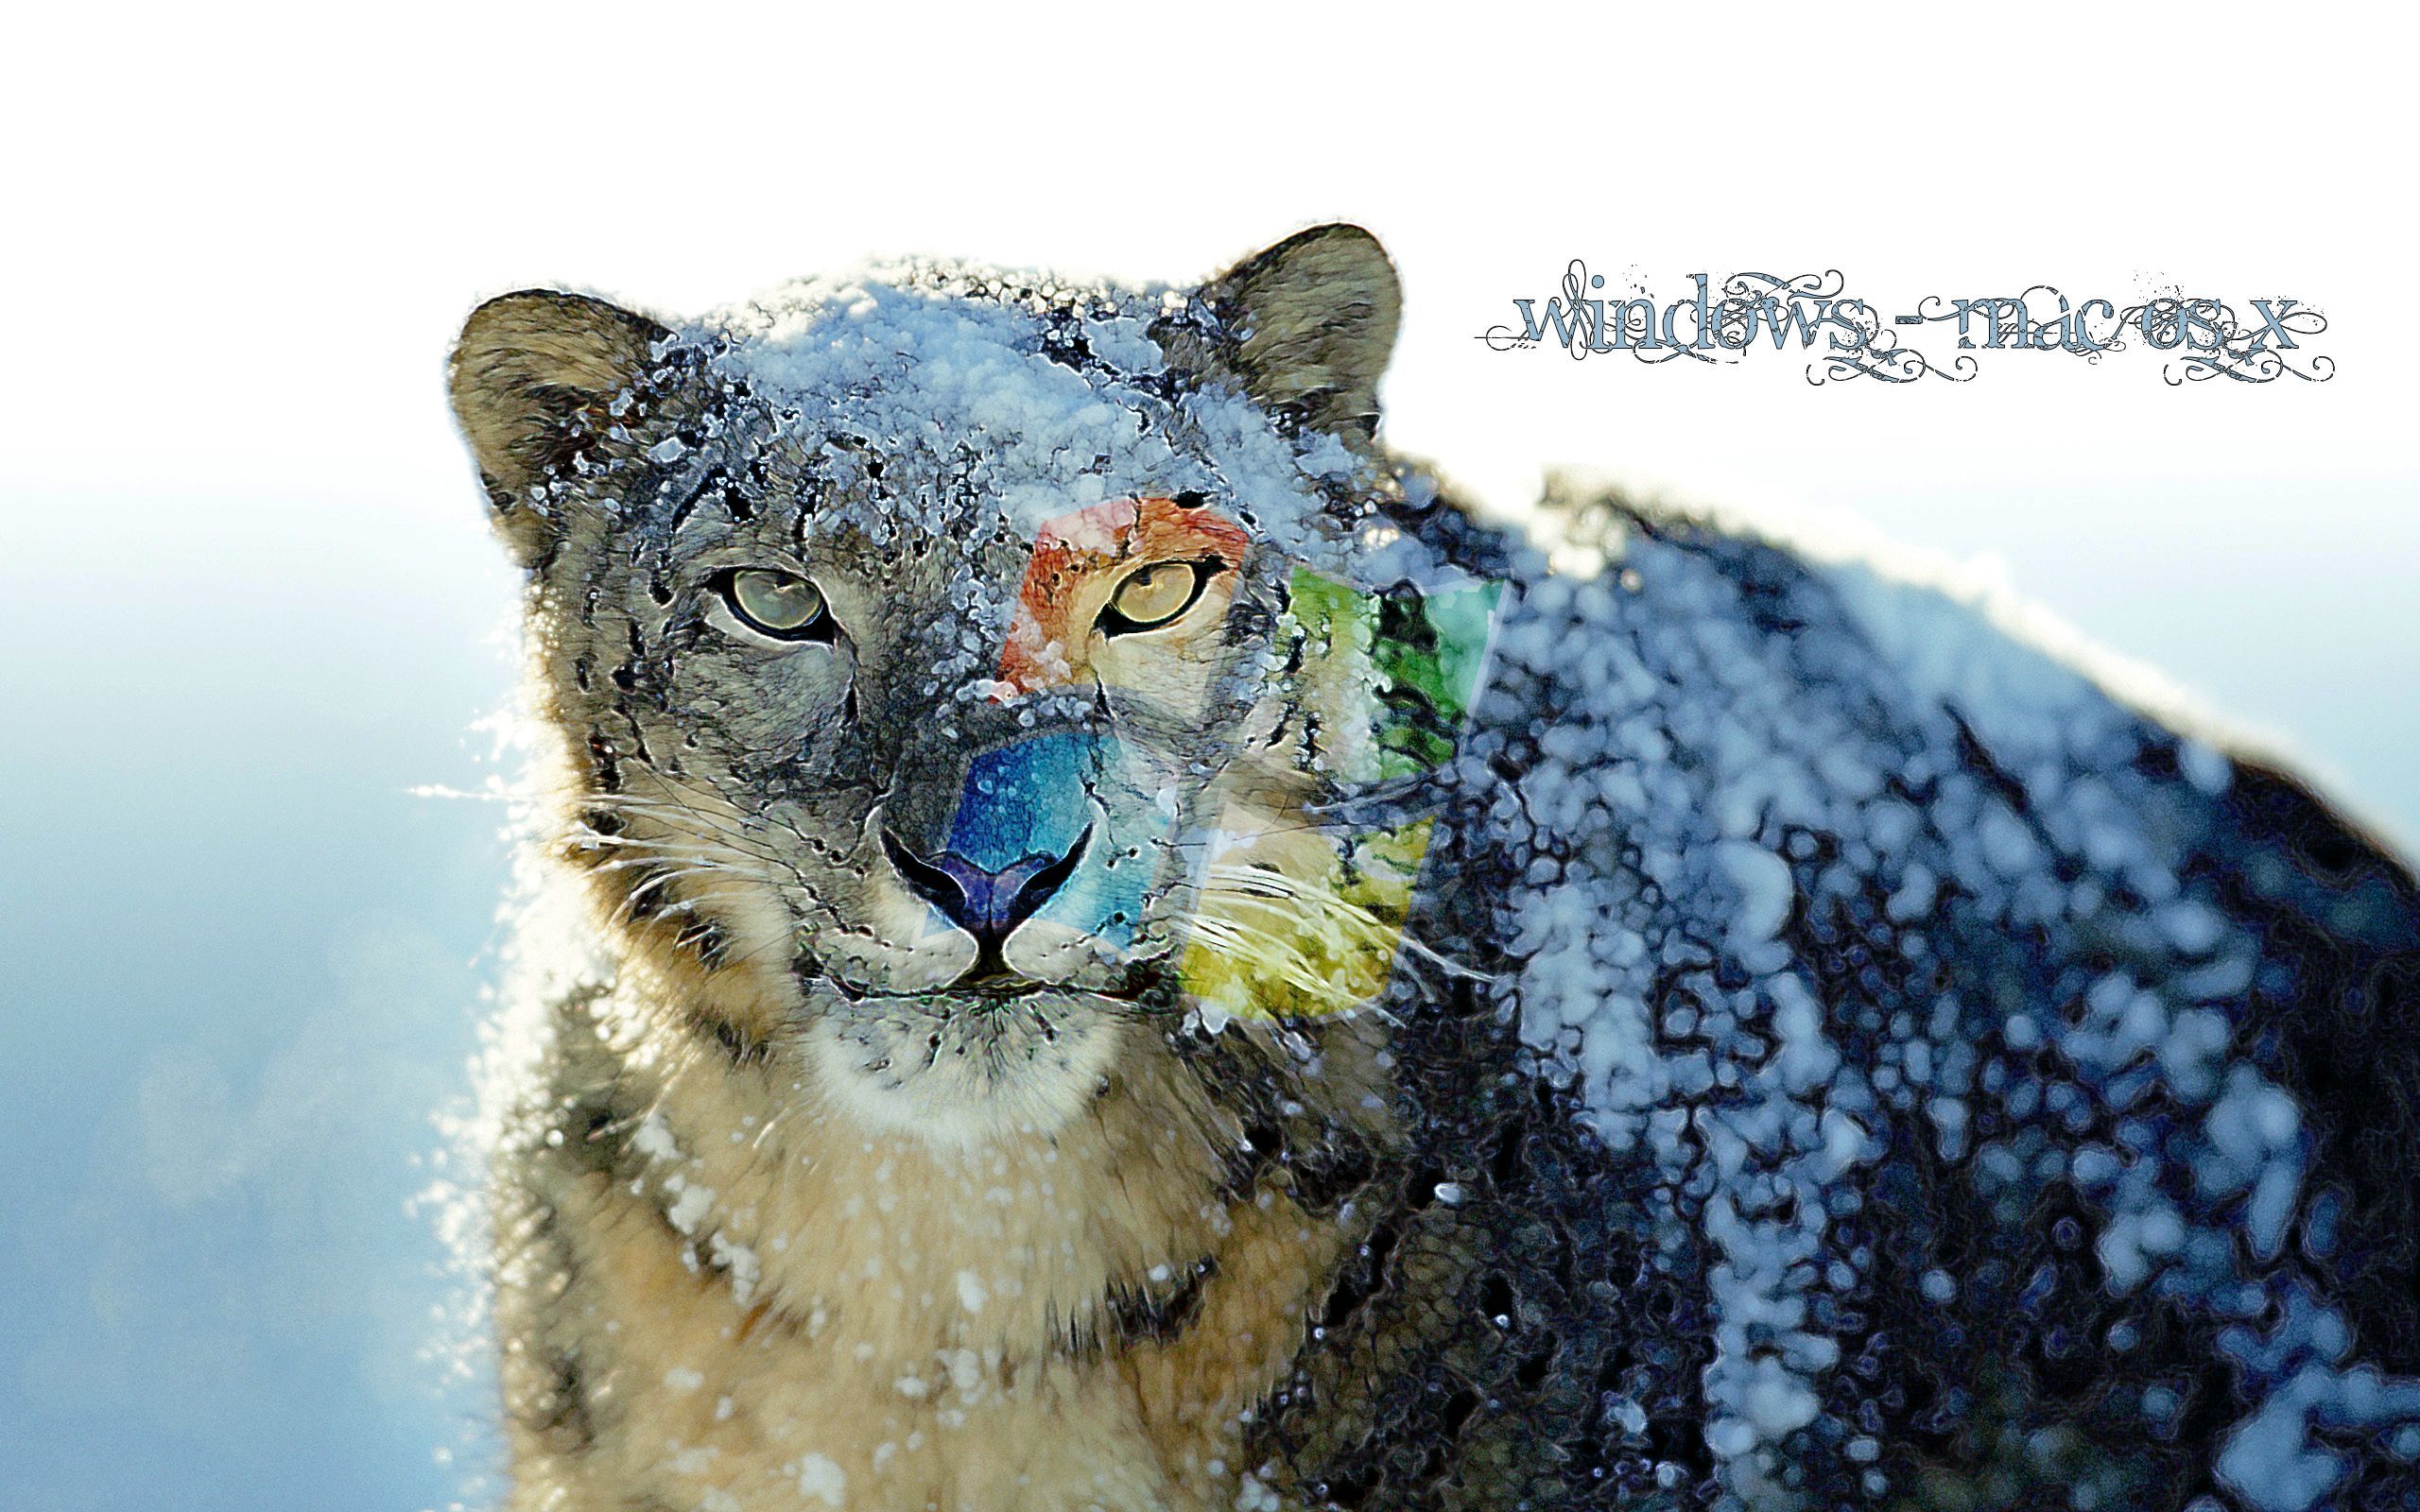 apple wallpaper snow leopard